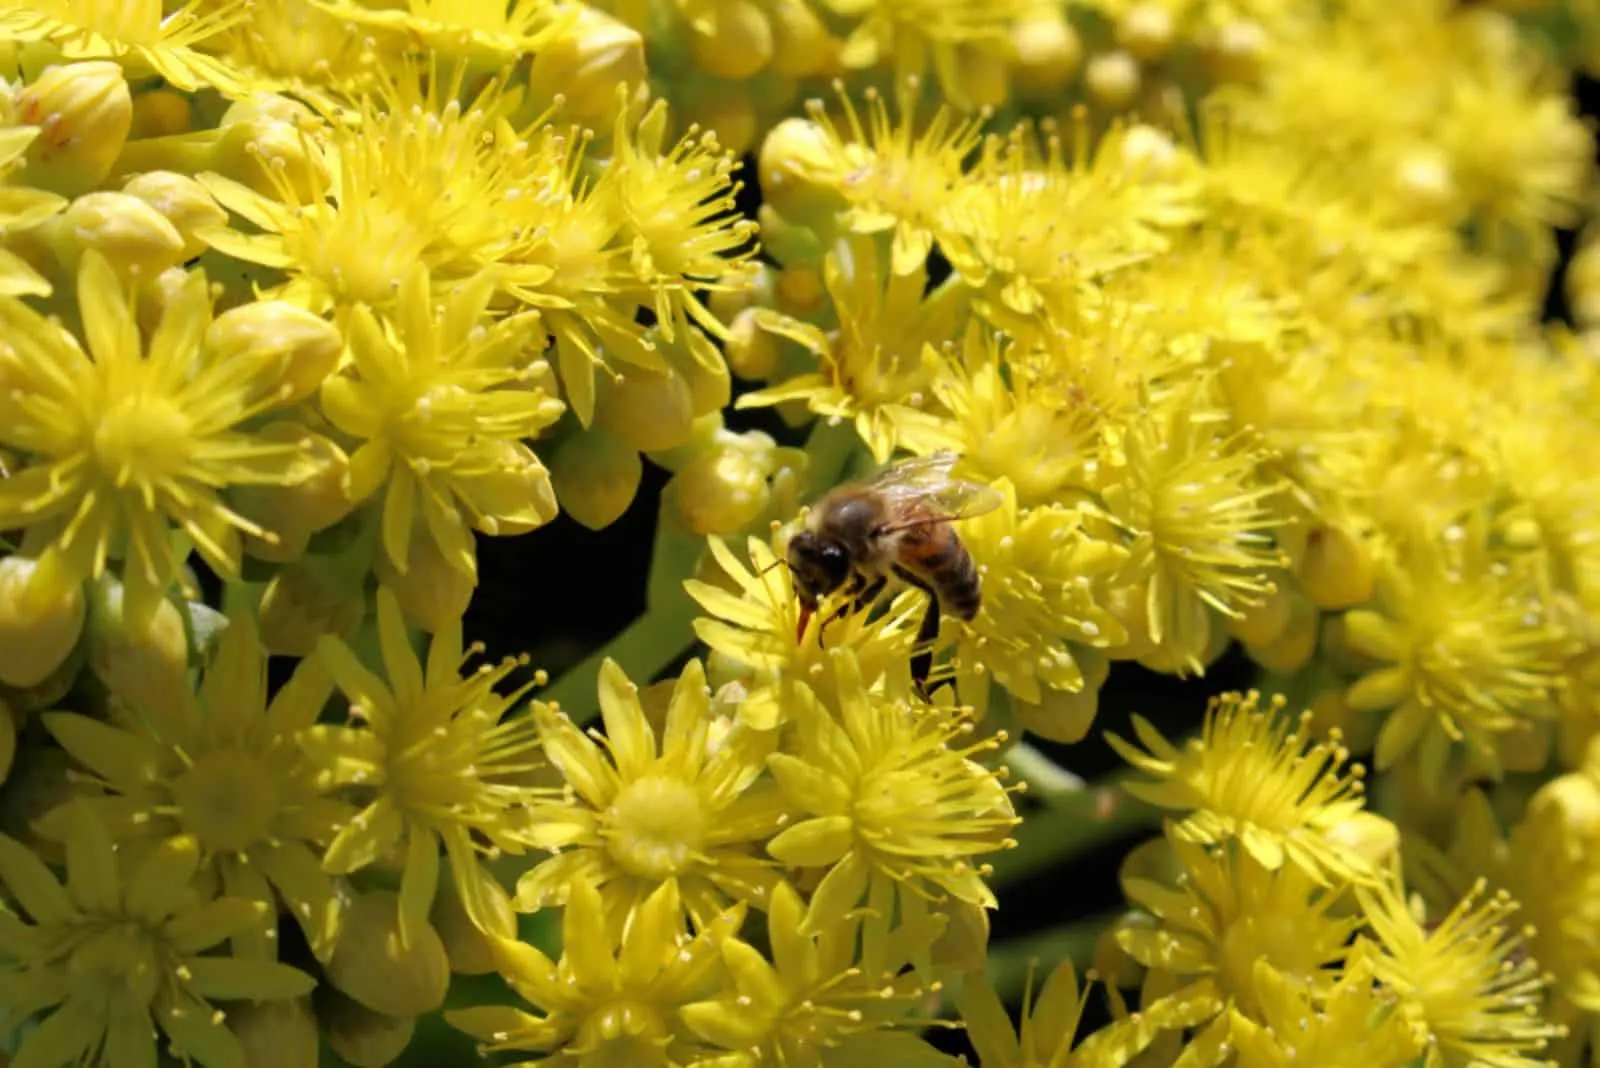 Aeonium Arboreum with yellow flowers